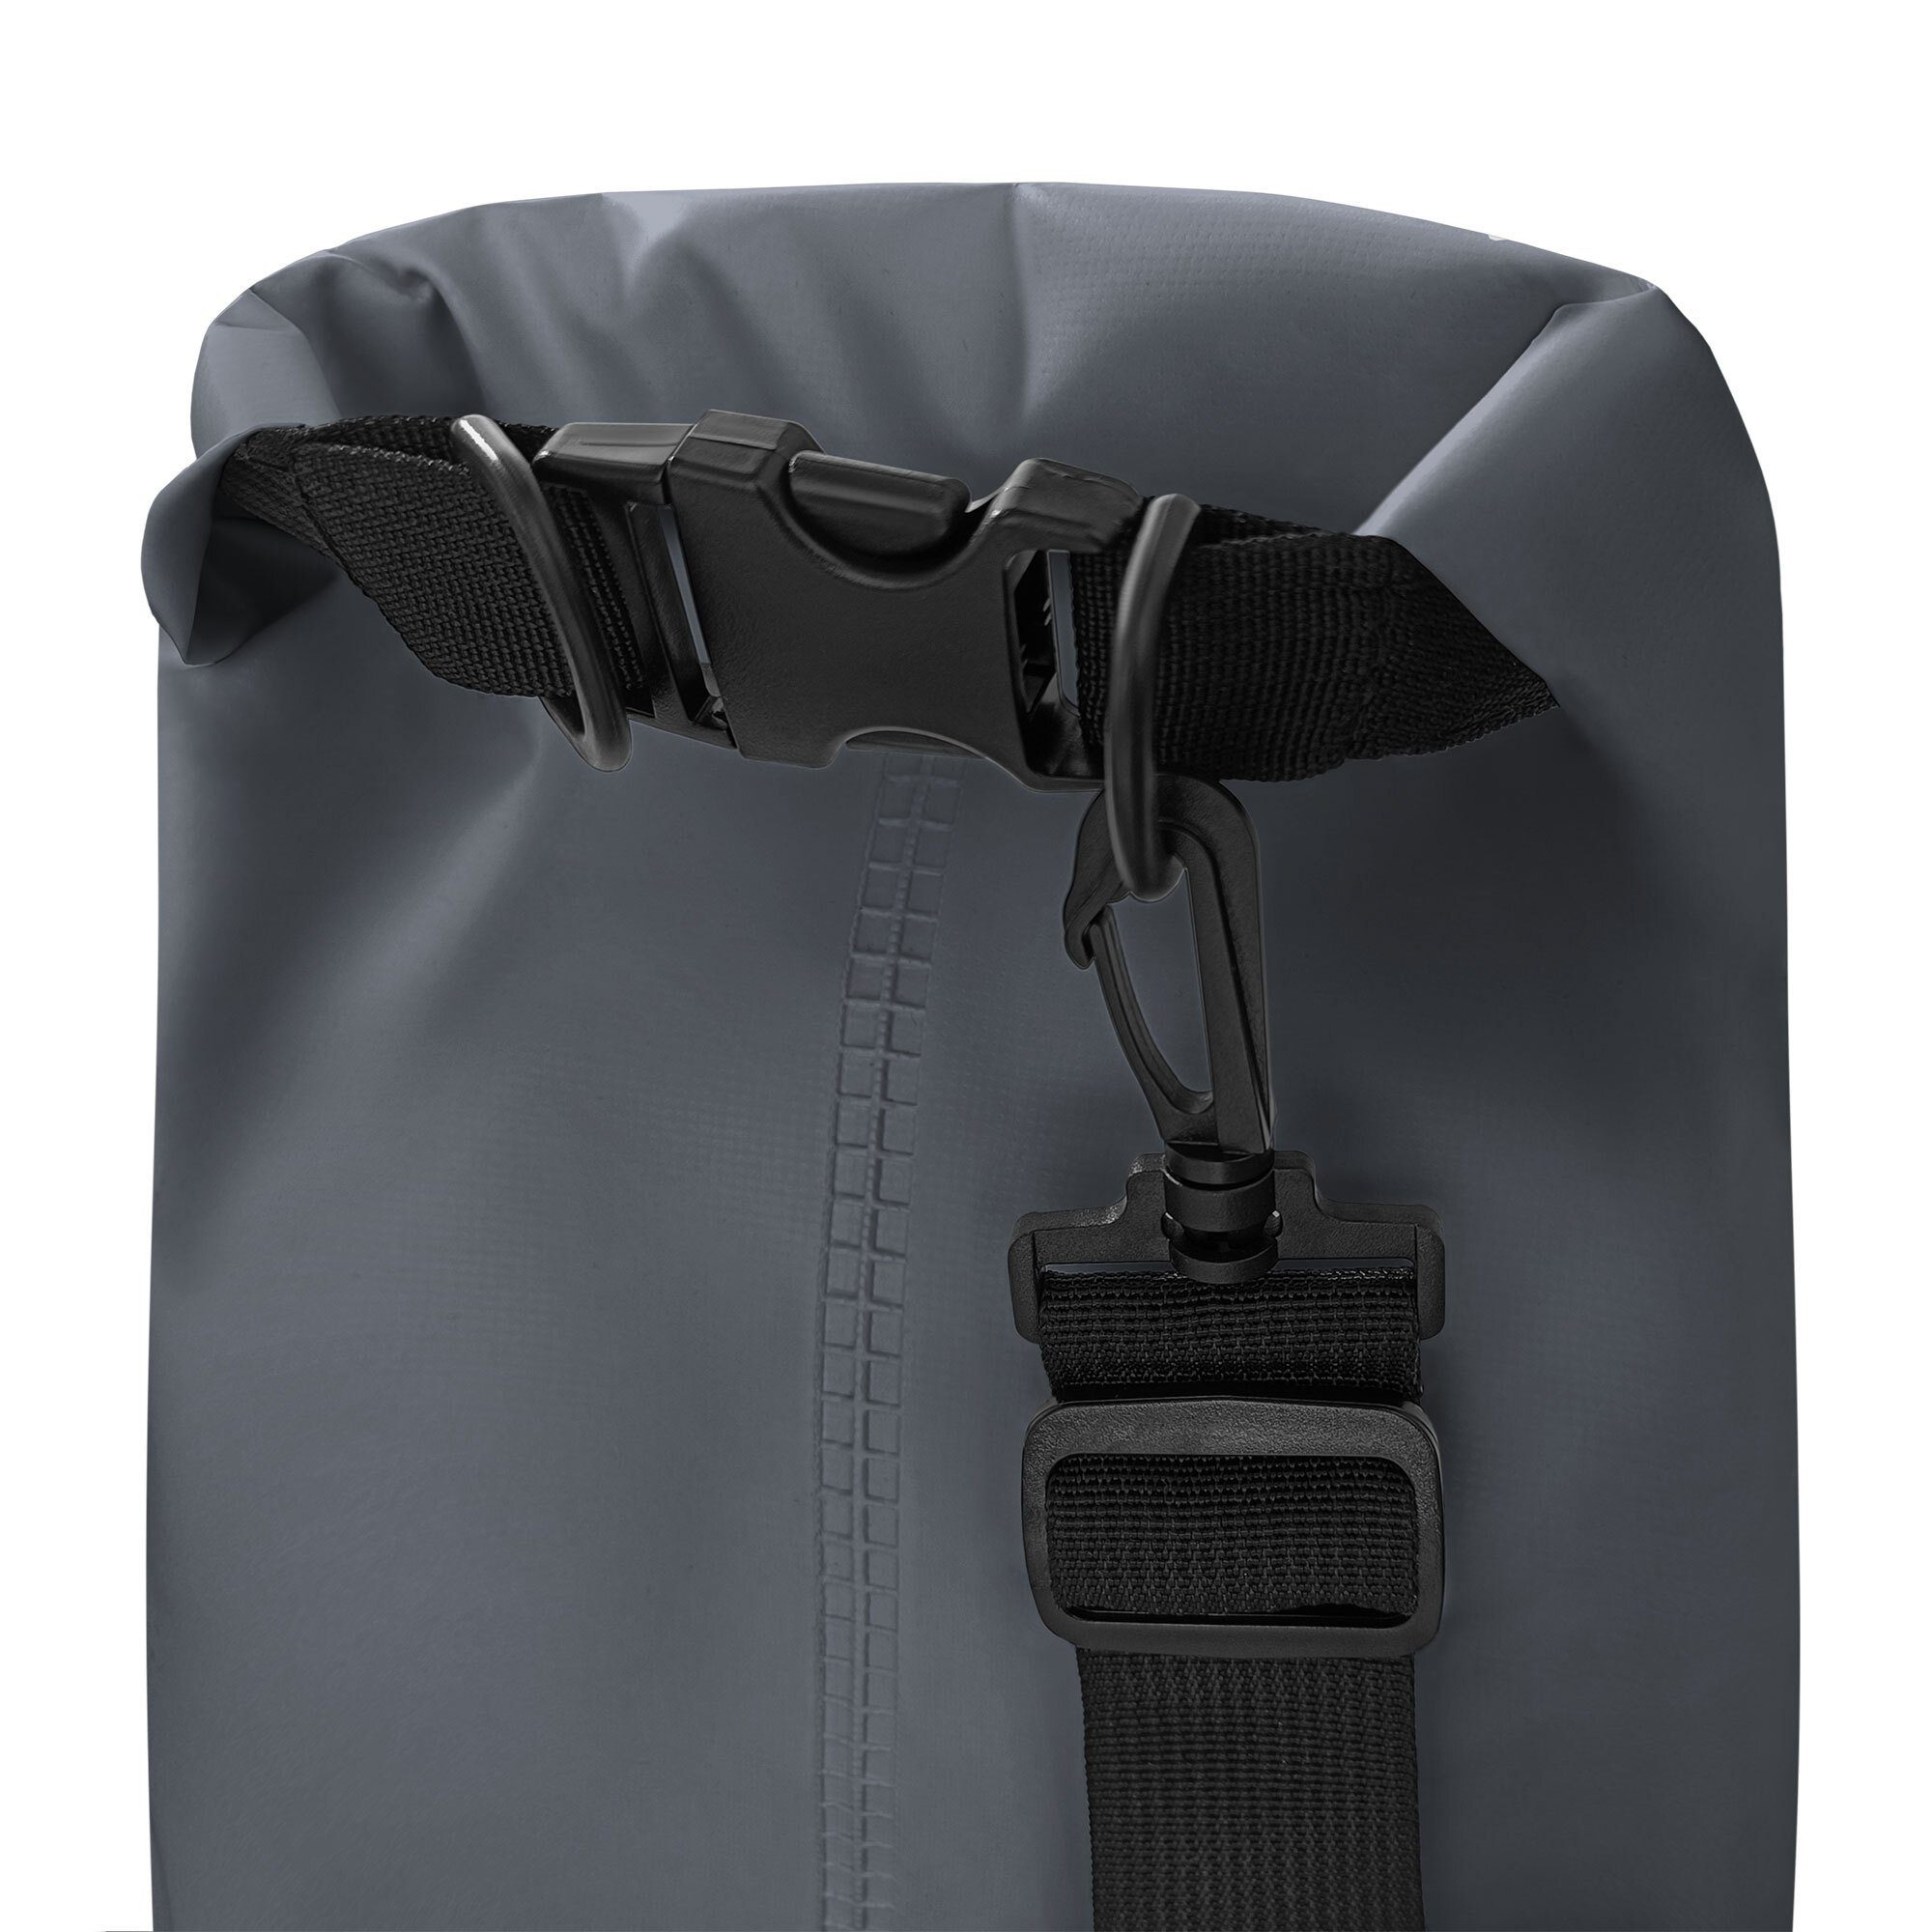 1,5l packsack ISAR wasserfester YEAZ Drybag schwarz